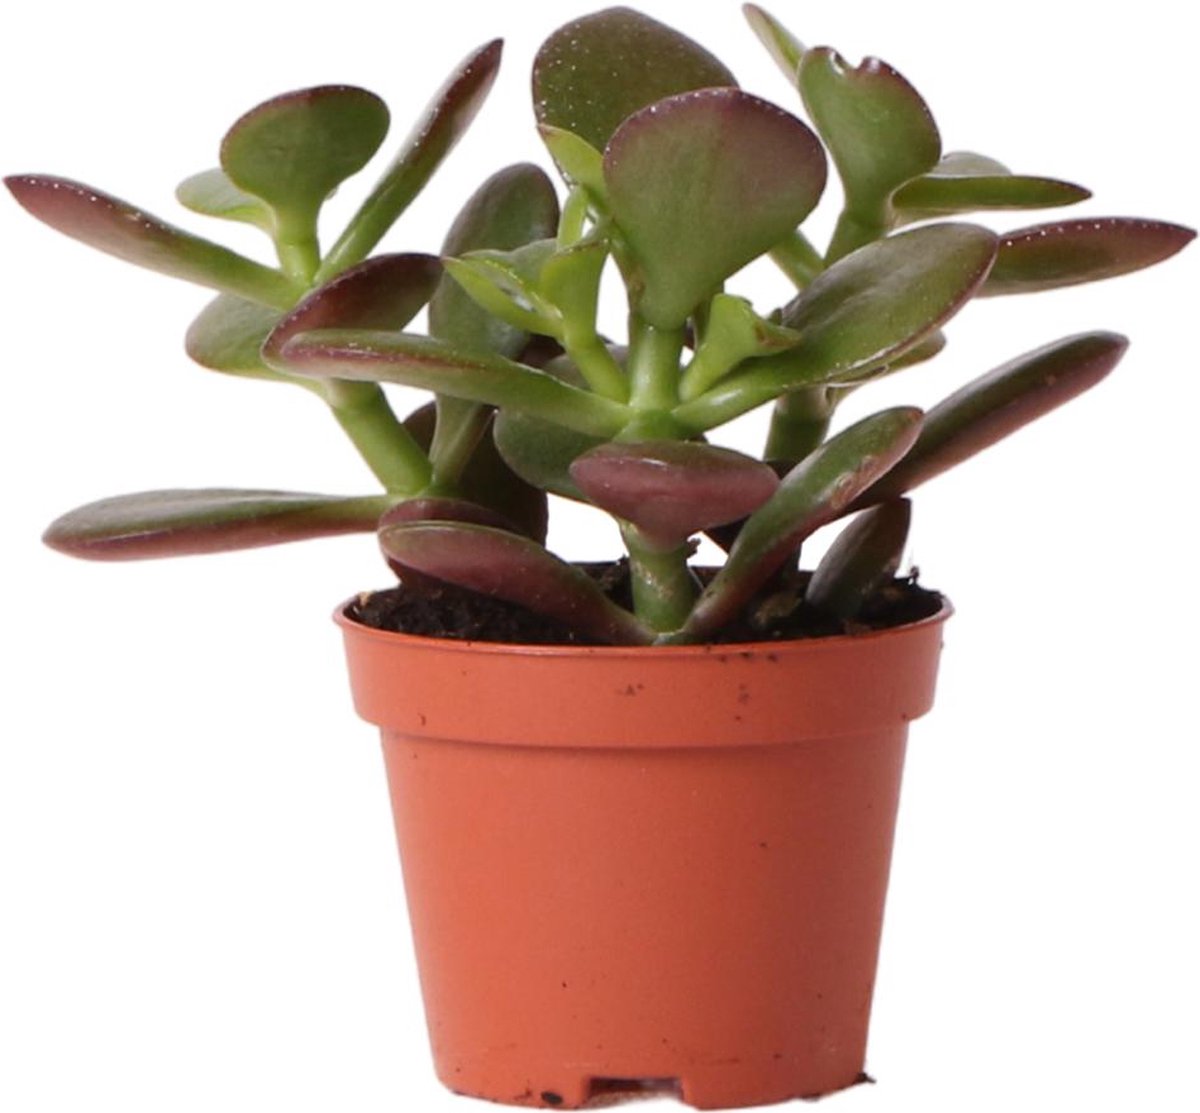 Vetplant - Crassula (Crassula) - Hoogte: 8 cm - van Botanicly